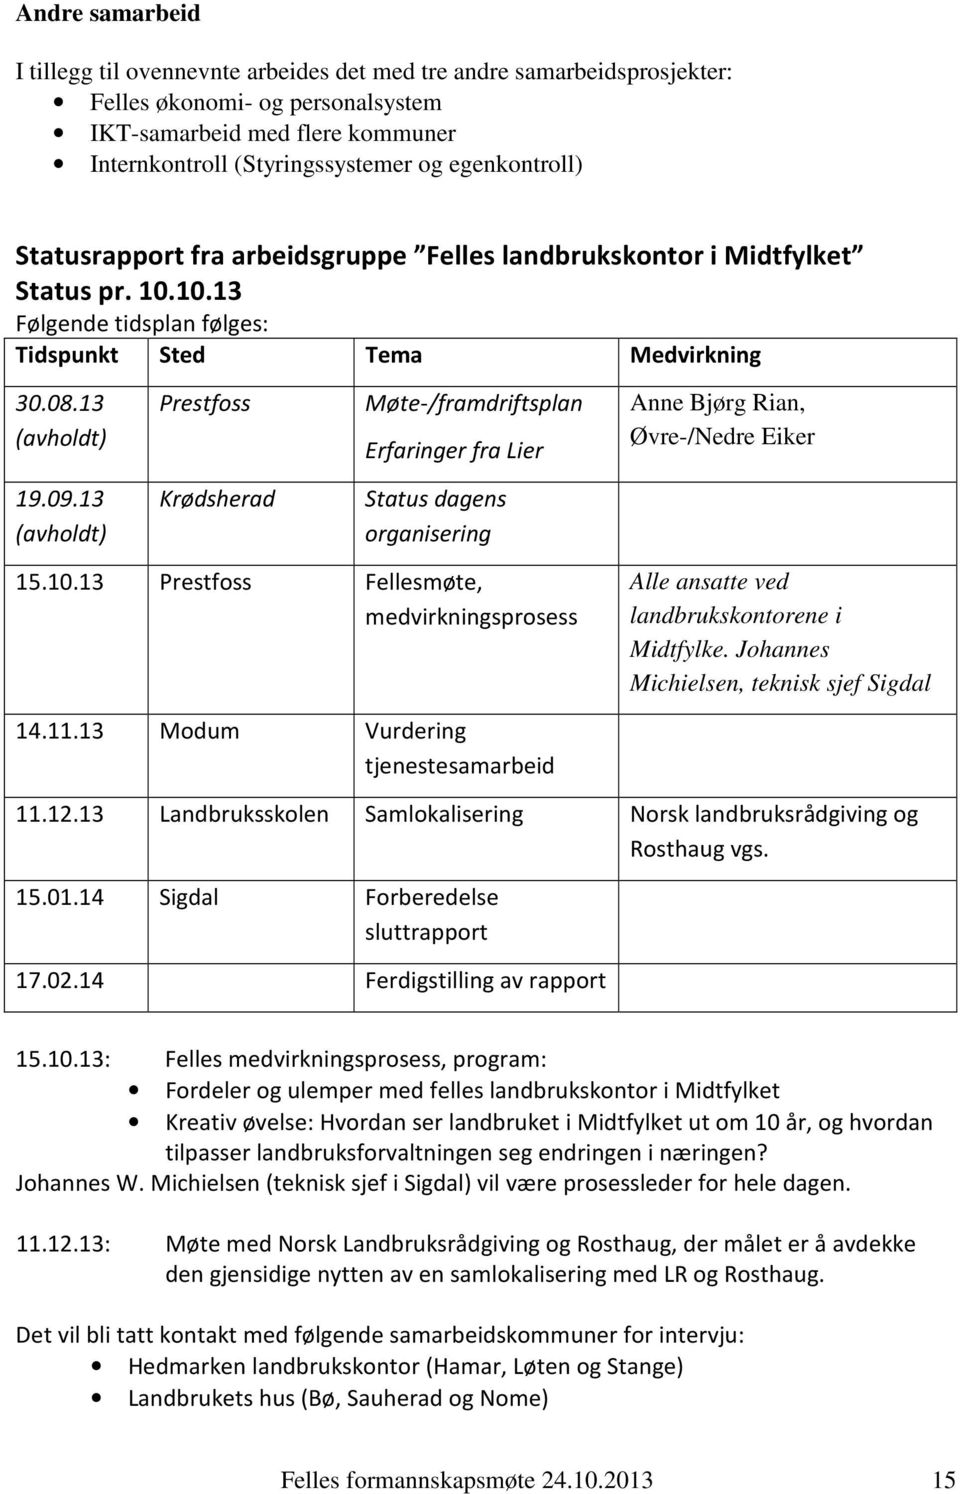 13 (avholdt) Prestfoss Møte-/framdriftsplan Erfaringer fra Lier Anne Bjørg Rian, Øvre-/Nedre Eiker 19.09.13 (avholdt) Krødsherad Status dagens organisering 15.10.